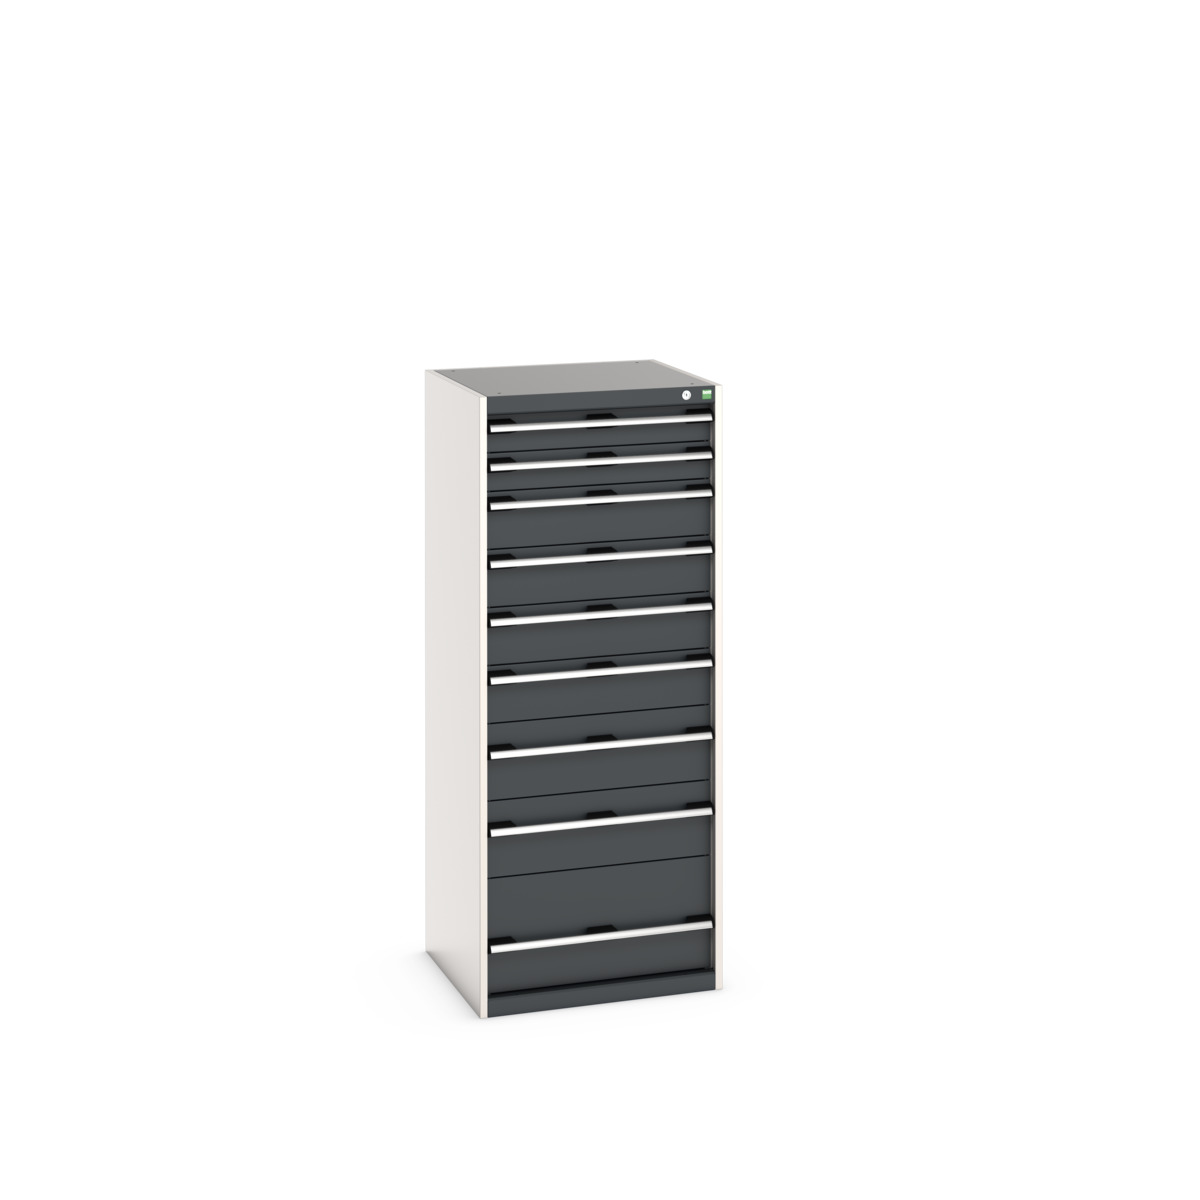 40019154.19V - cubio drawer cabinet